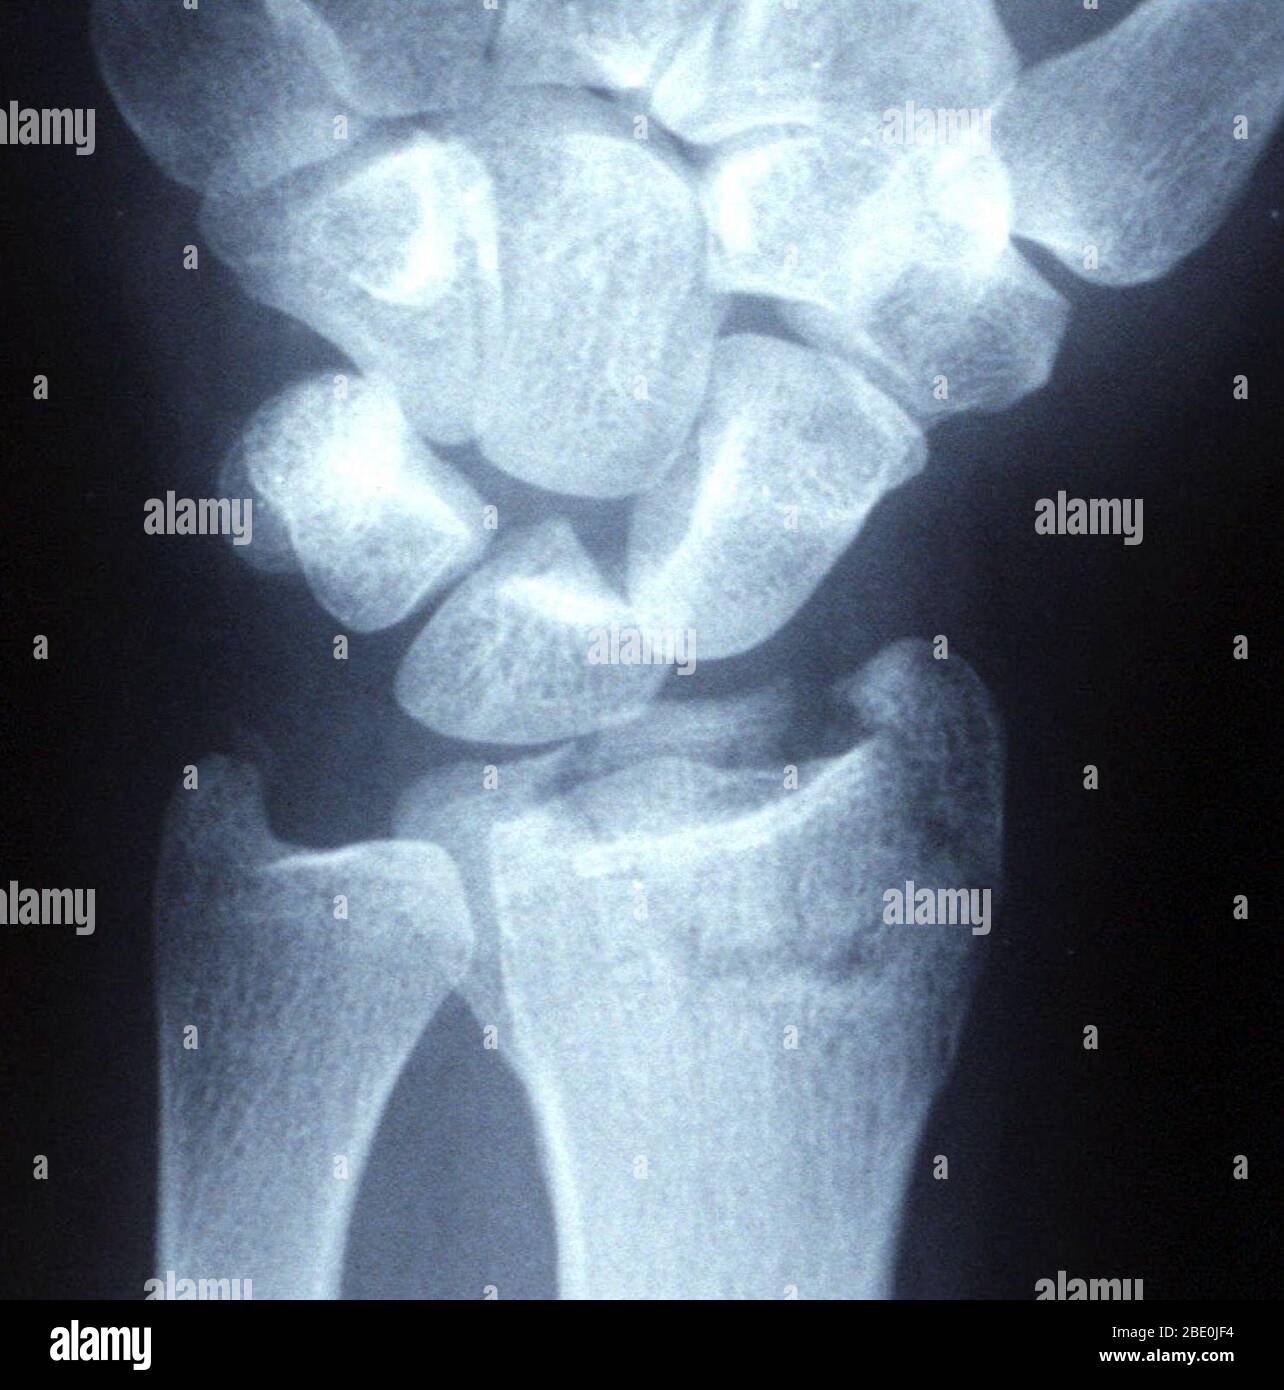 Rayons X d'une fracture distale intra-articulaire déplacée (poignet cassé) dans un fixateur externe. Banque D'Images